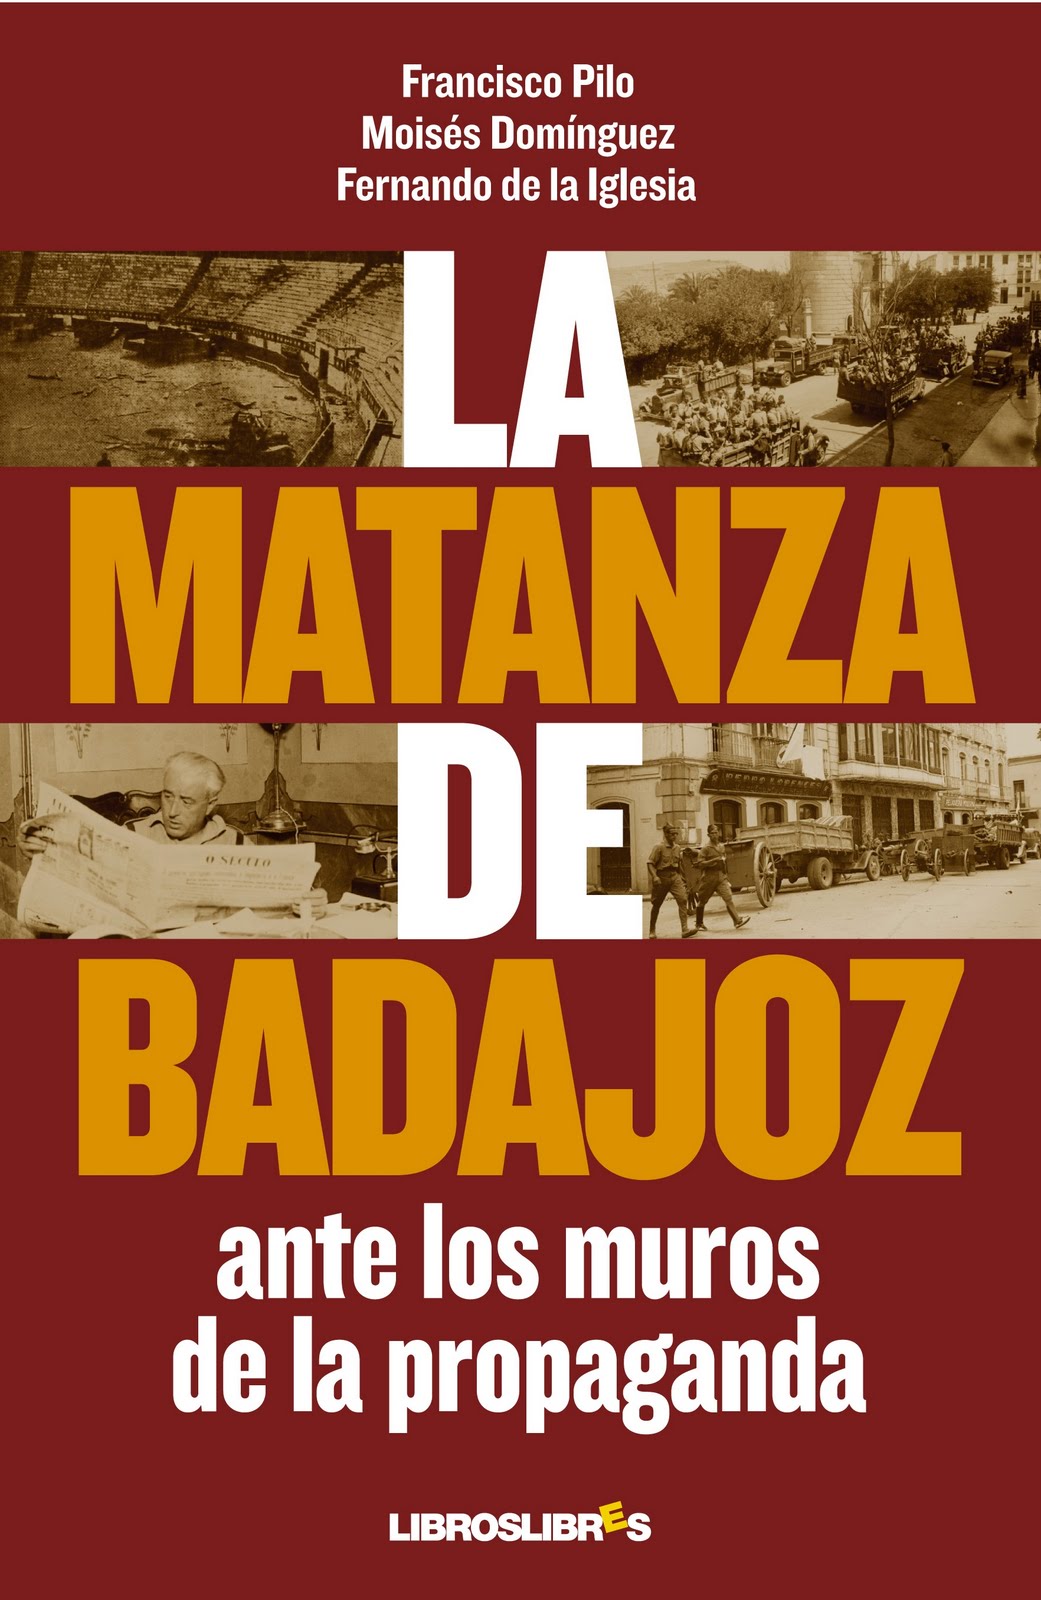 La "matanza" de Badajoz: cuando la propaganda se convierte en mito La+matanza+de+Badajoz+ante+los+muros+de+la+Propaganda+-+Francisco+Pilo